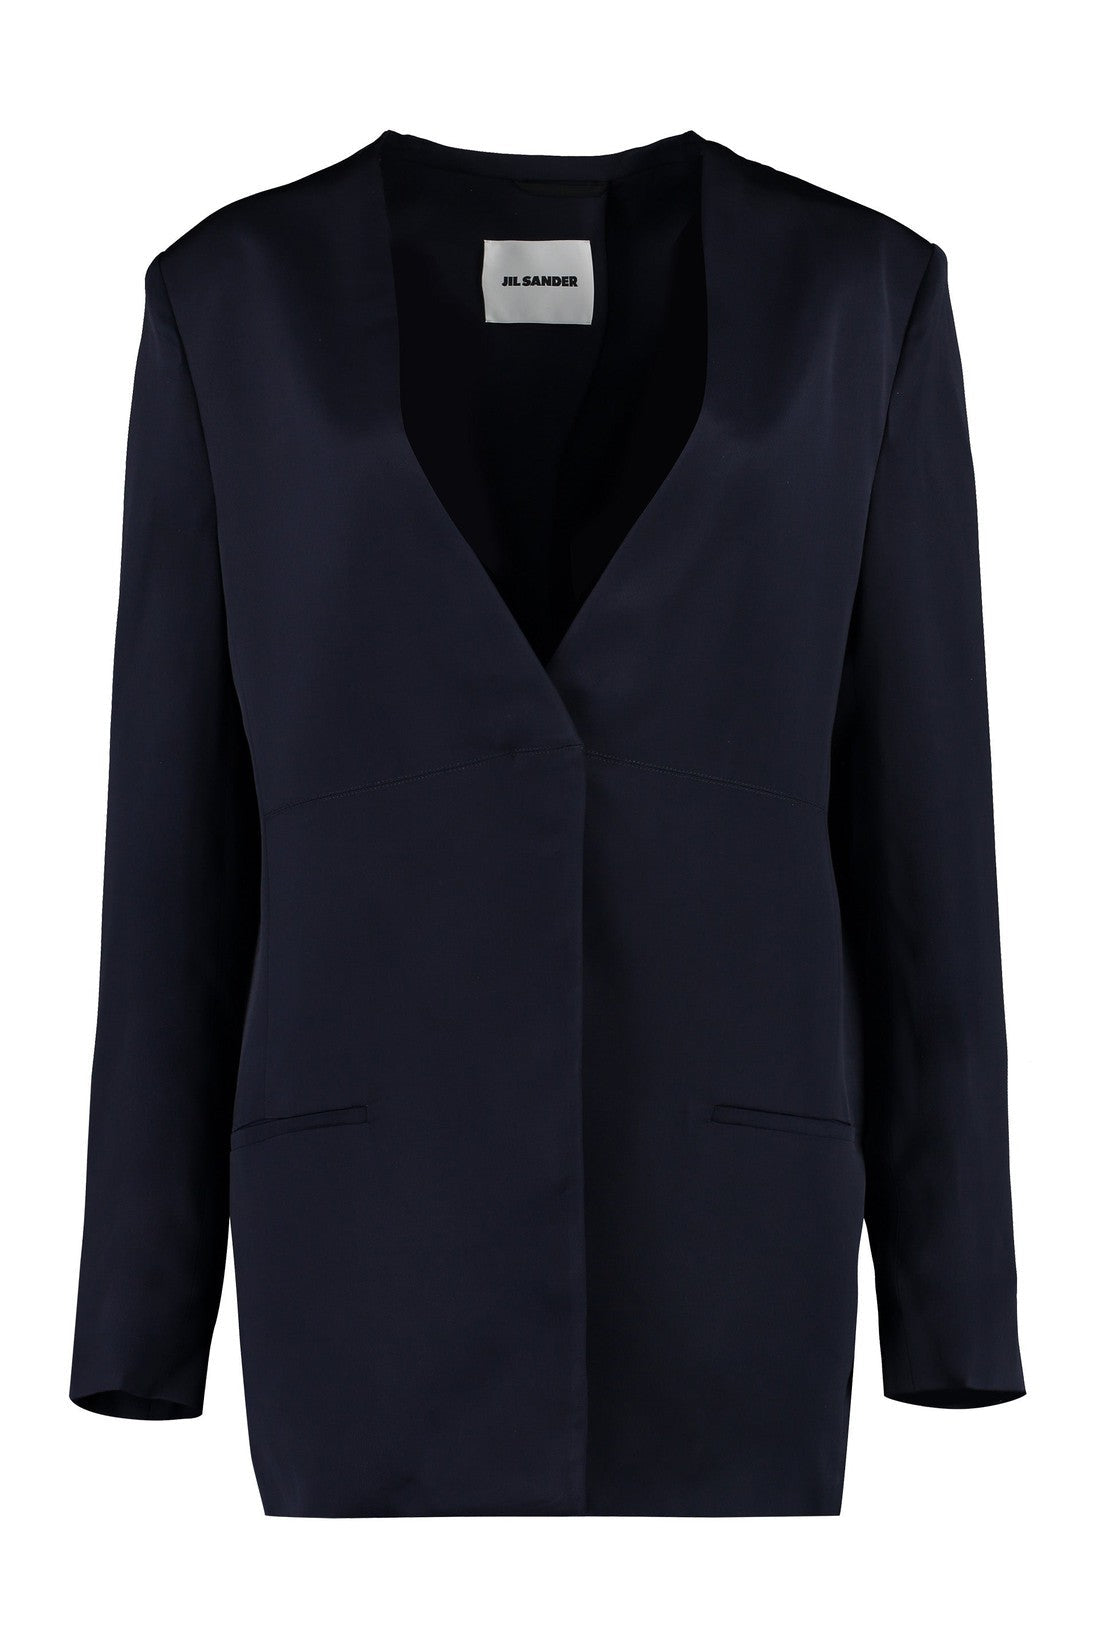 Jil Sander-OUTLET-SALE-Tailored jacket-ARCHIVIST